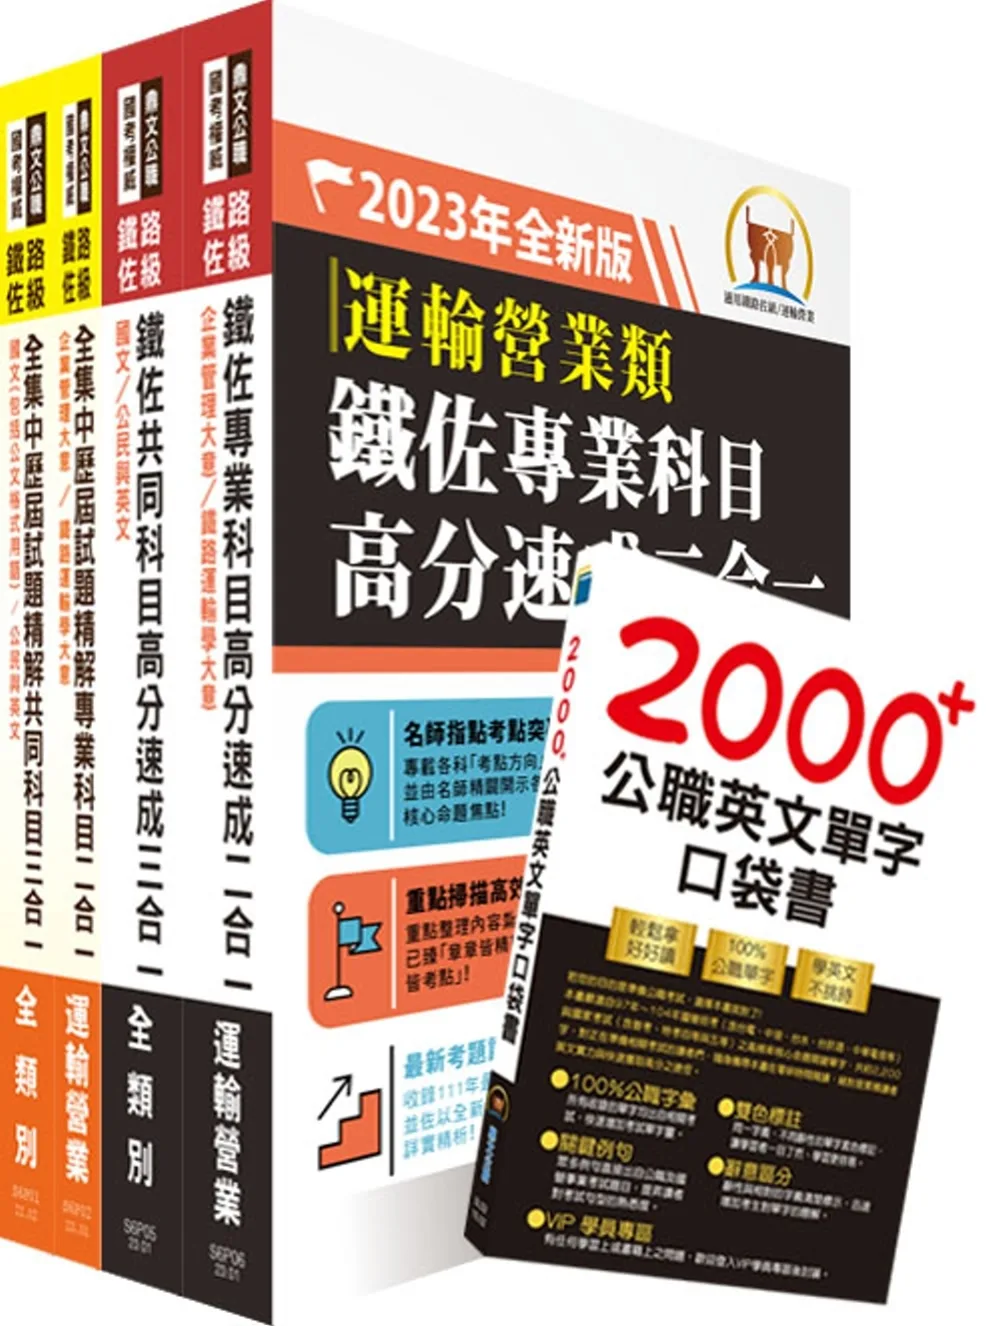 2023鐵路佐級•高分速成+歷屆試題精解【運輸營業】完全攻略套書